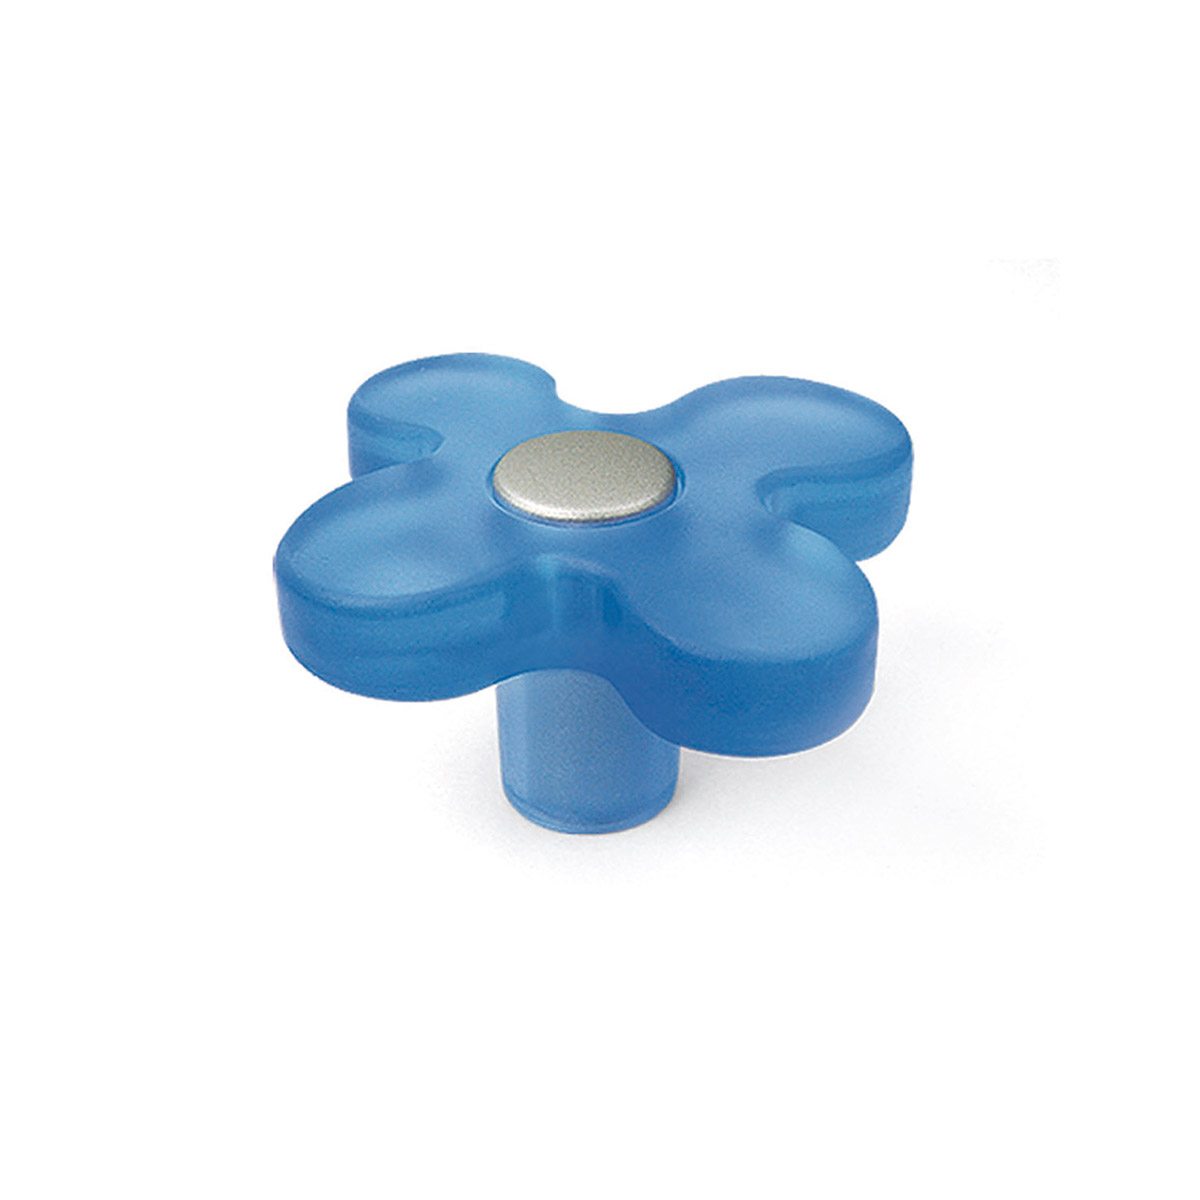 Pomo de plástico con acabado azul, dimensiones: 49x49x26mm Ø: 49mm